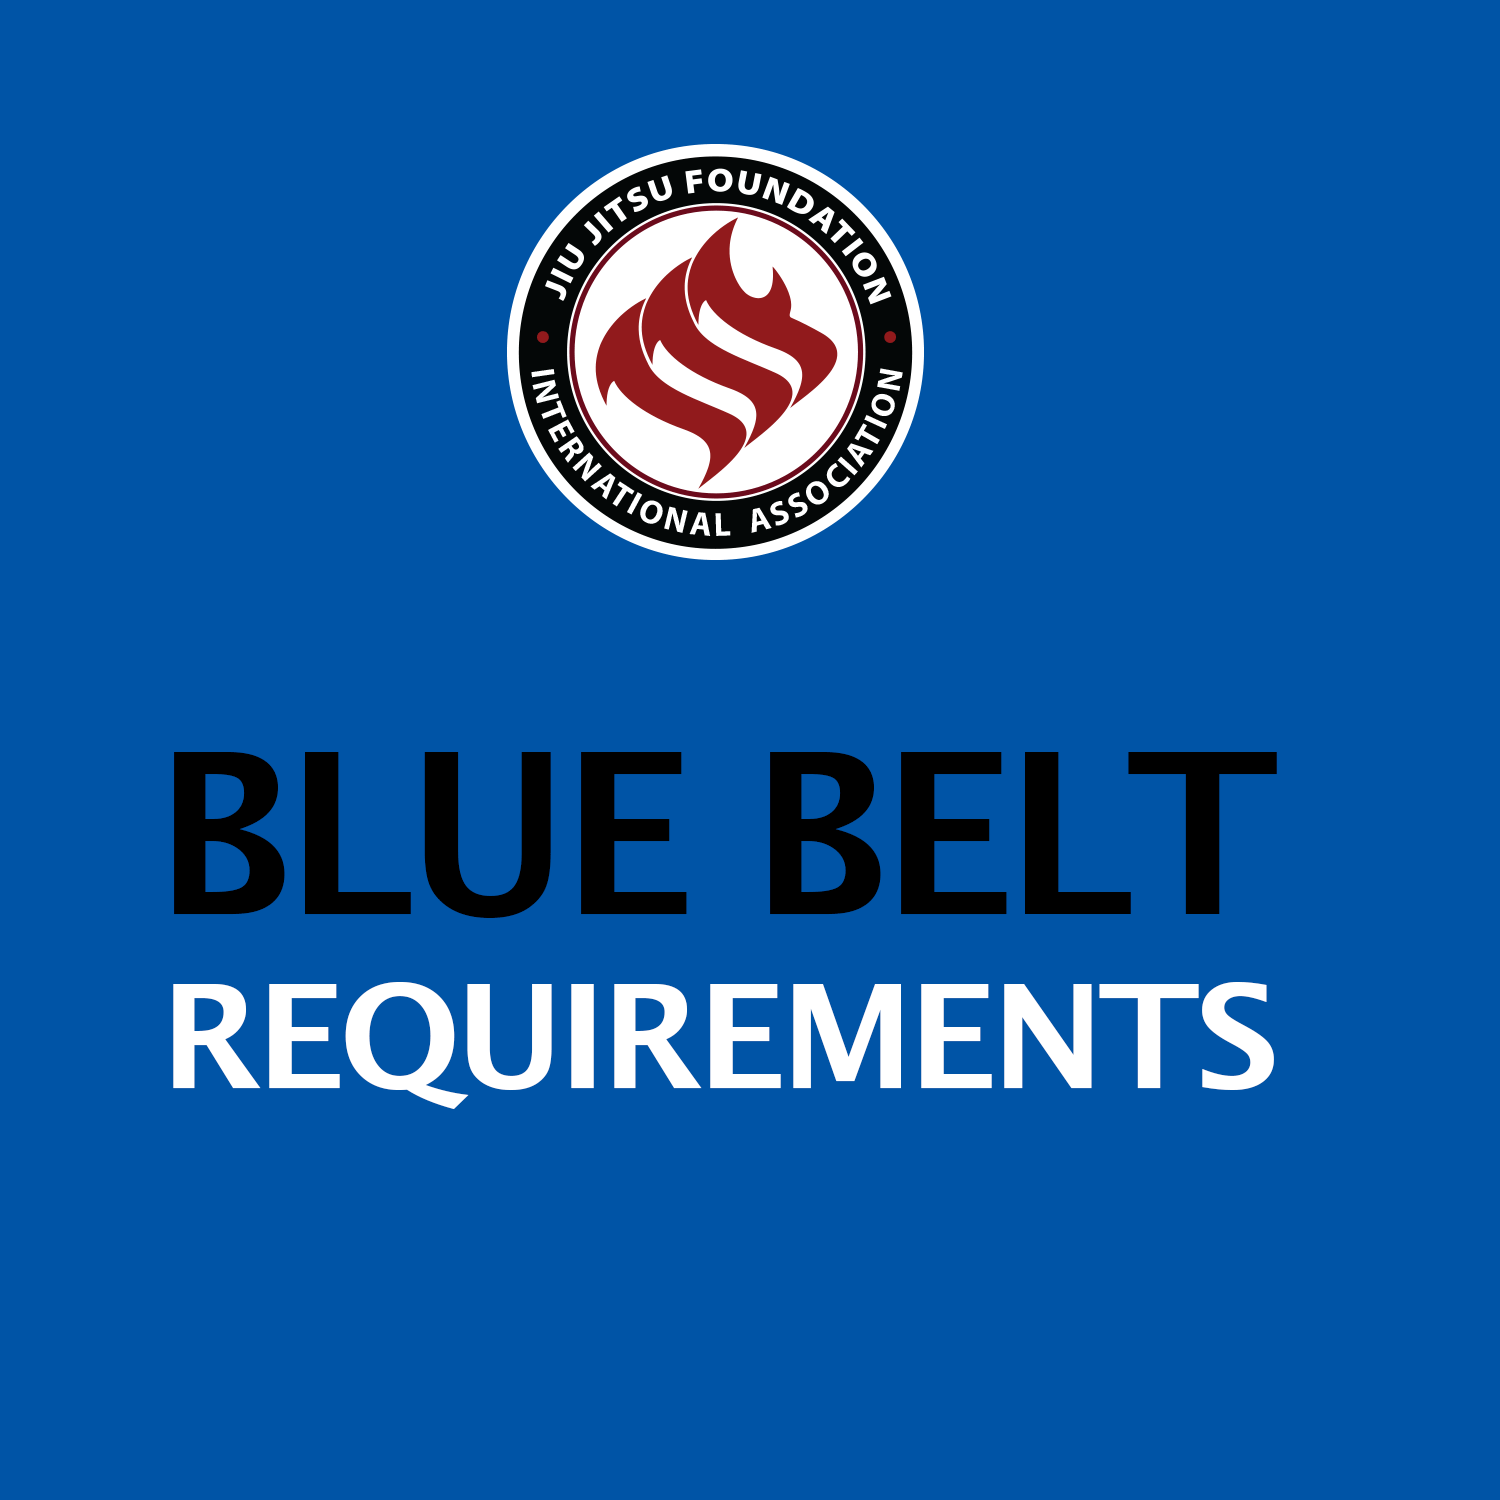 BLUE BELT REQUIREMENTS